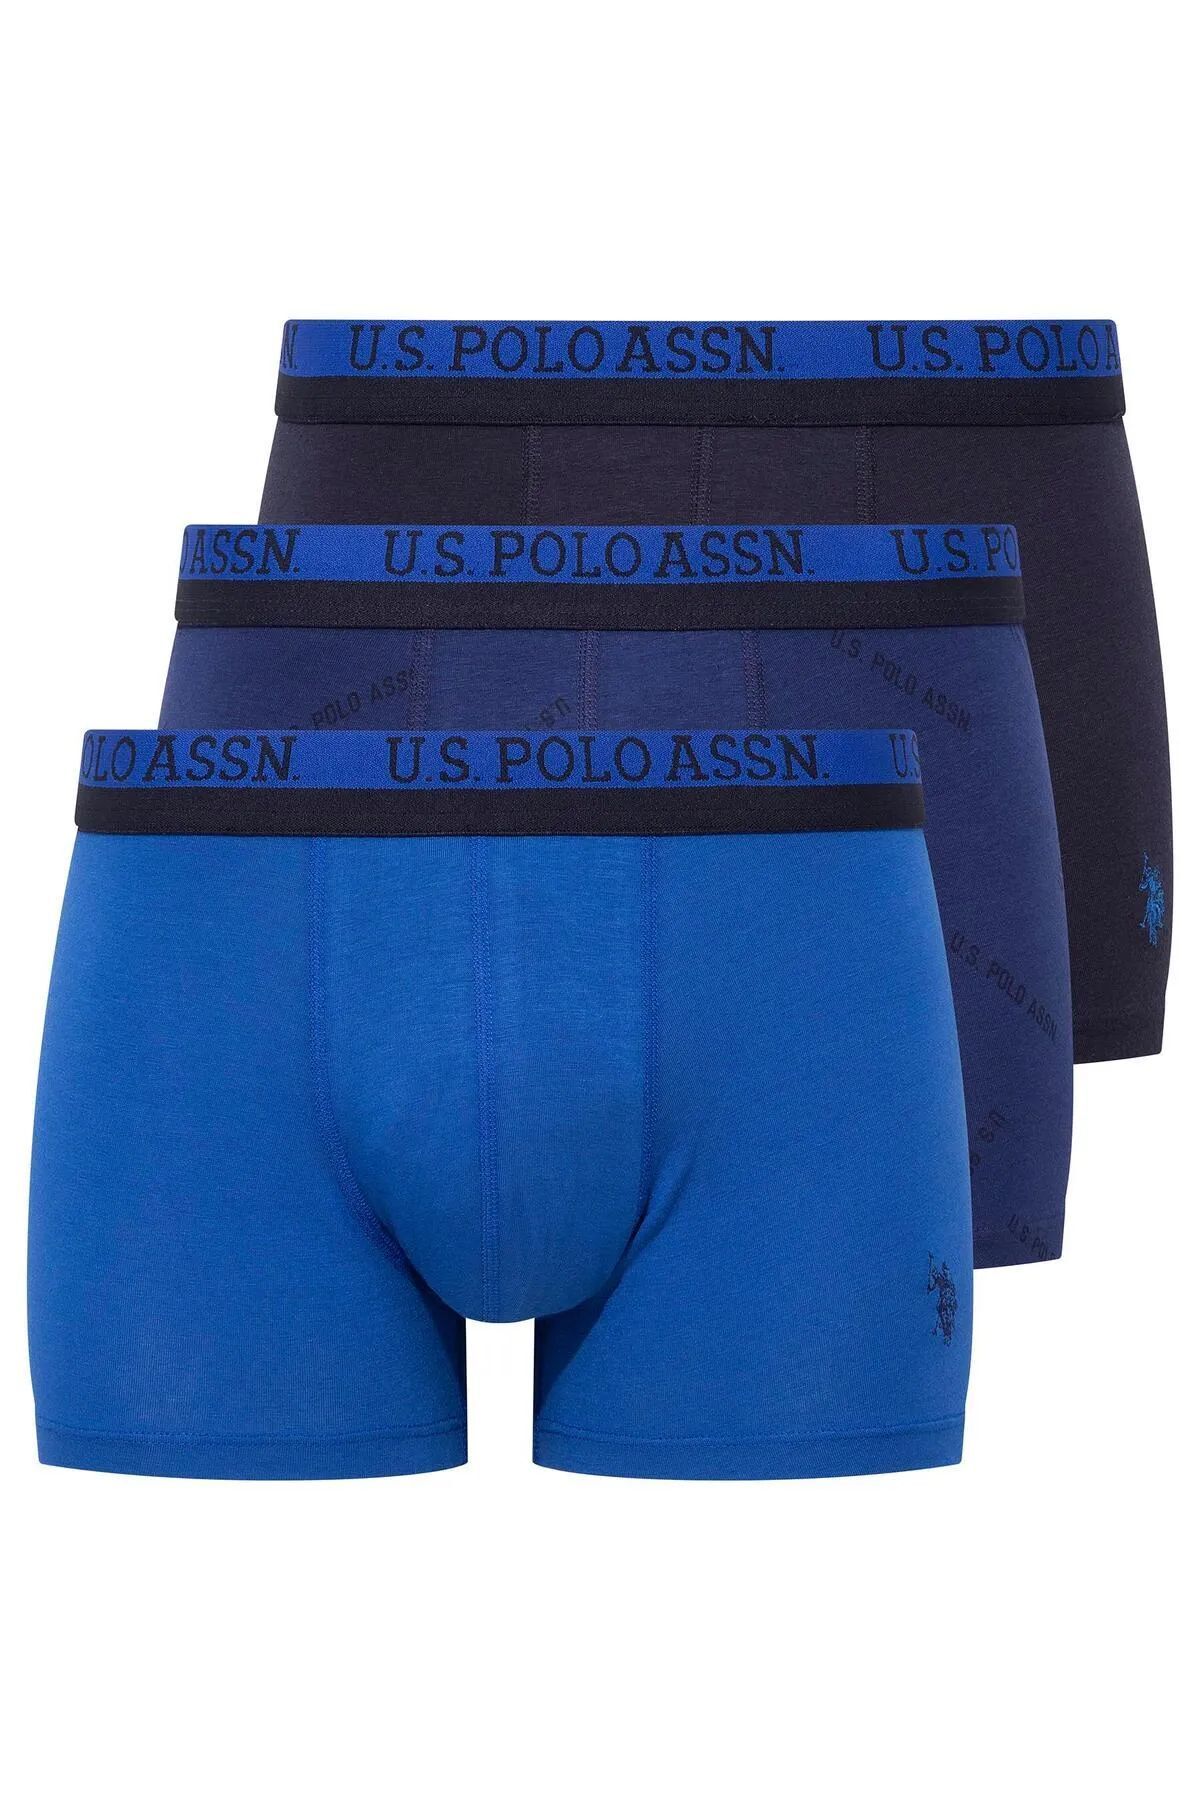 U.S. Polo Assn. U.s Polo Assn. 80522 Erkek Pamuklu 3'lü Boxer-Saks&Lacivert&Baskılı